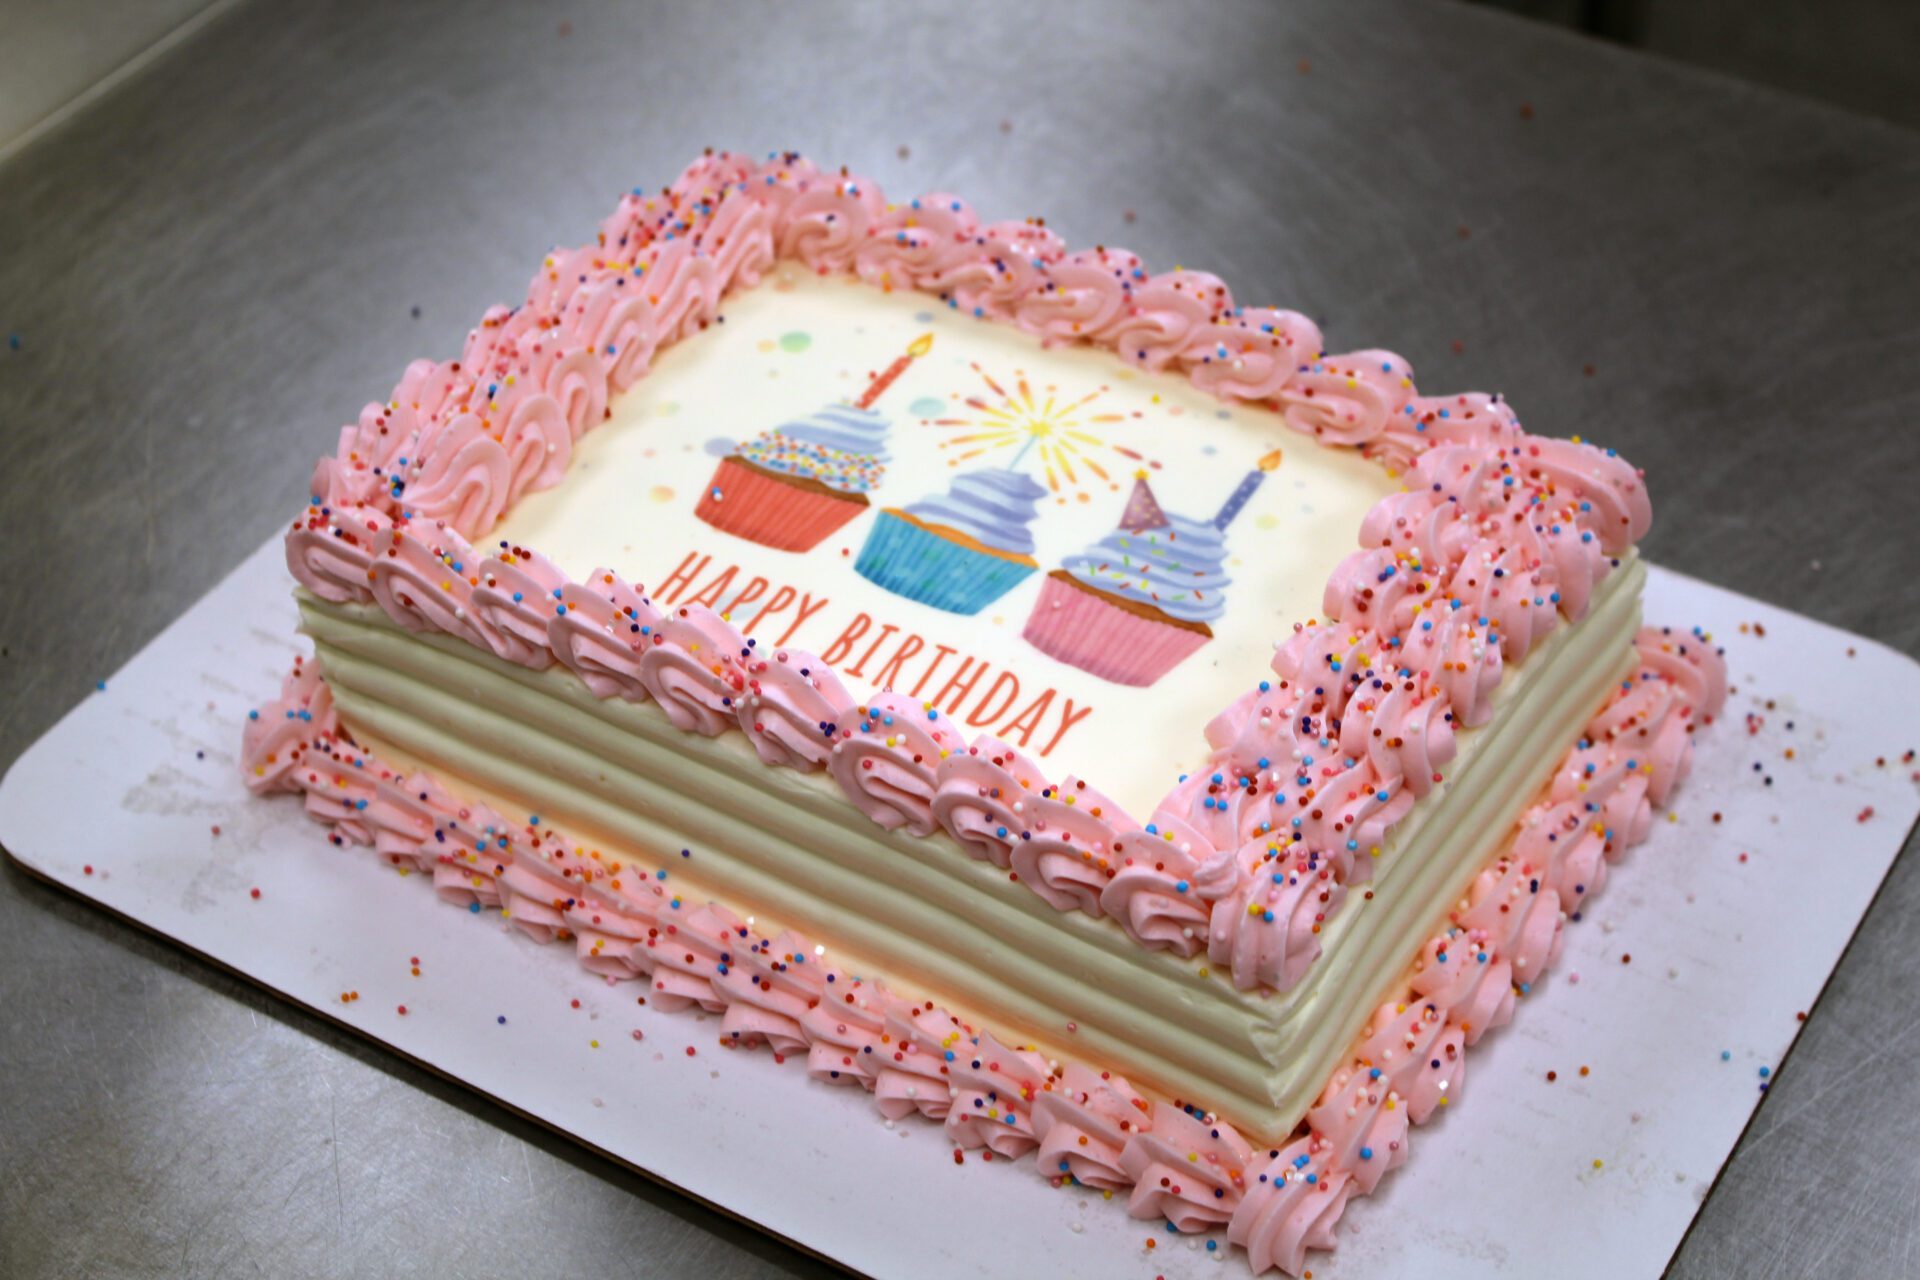 Pink and white birthday cake